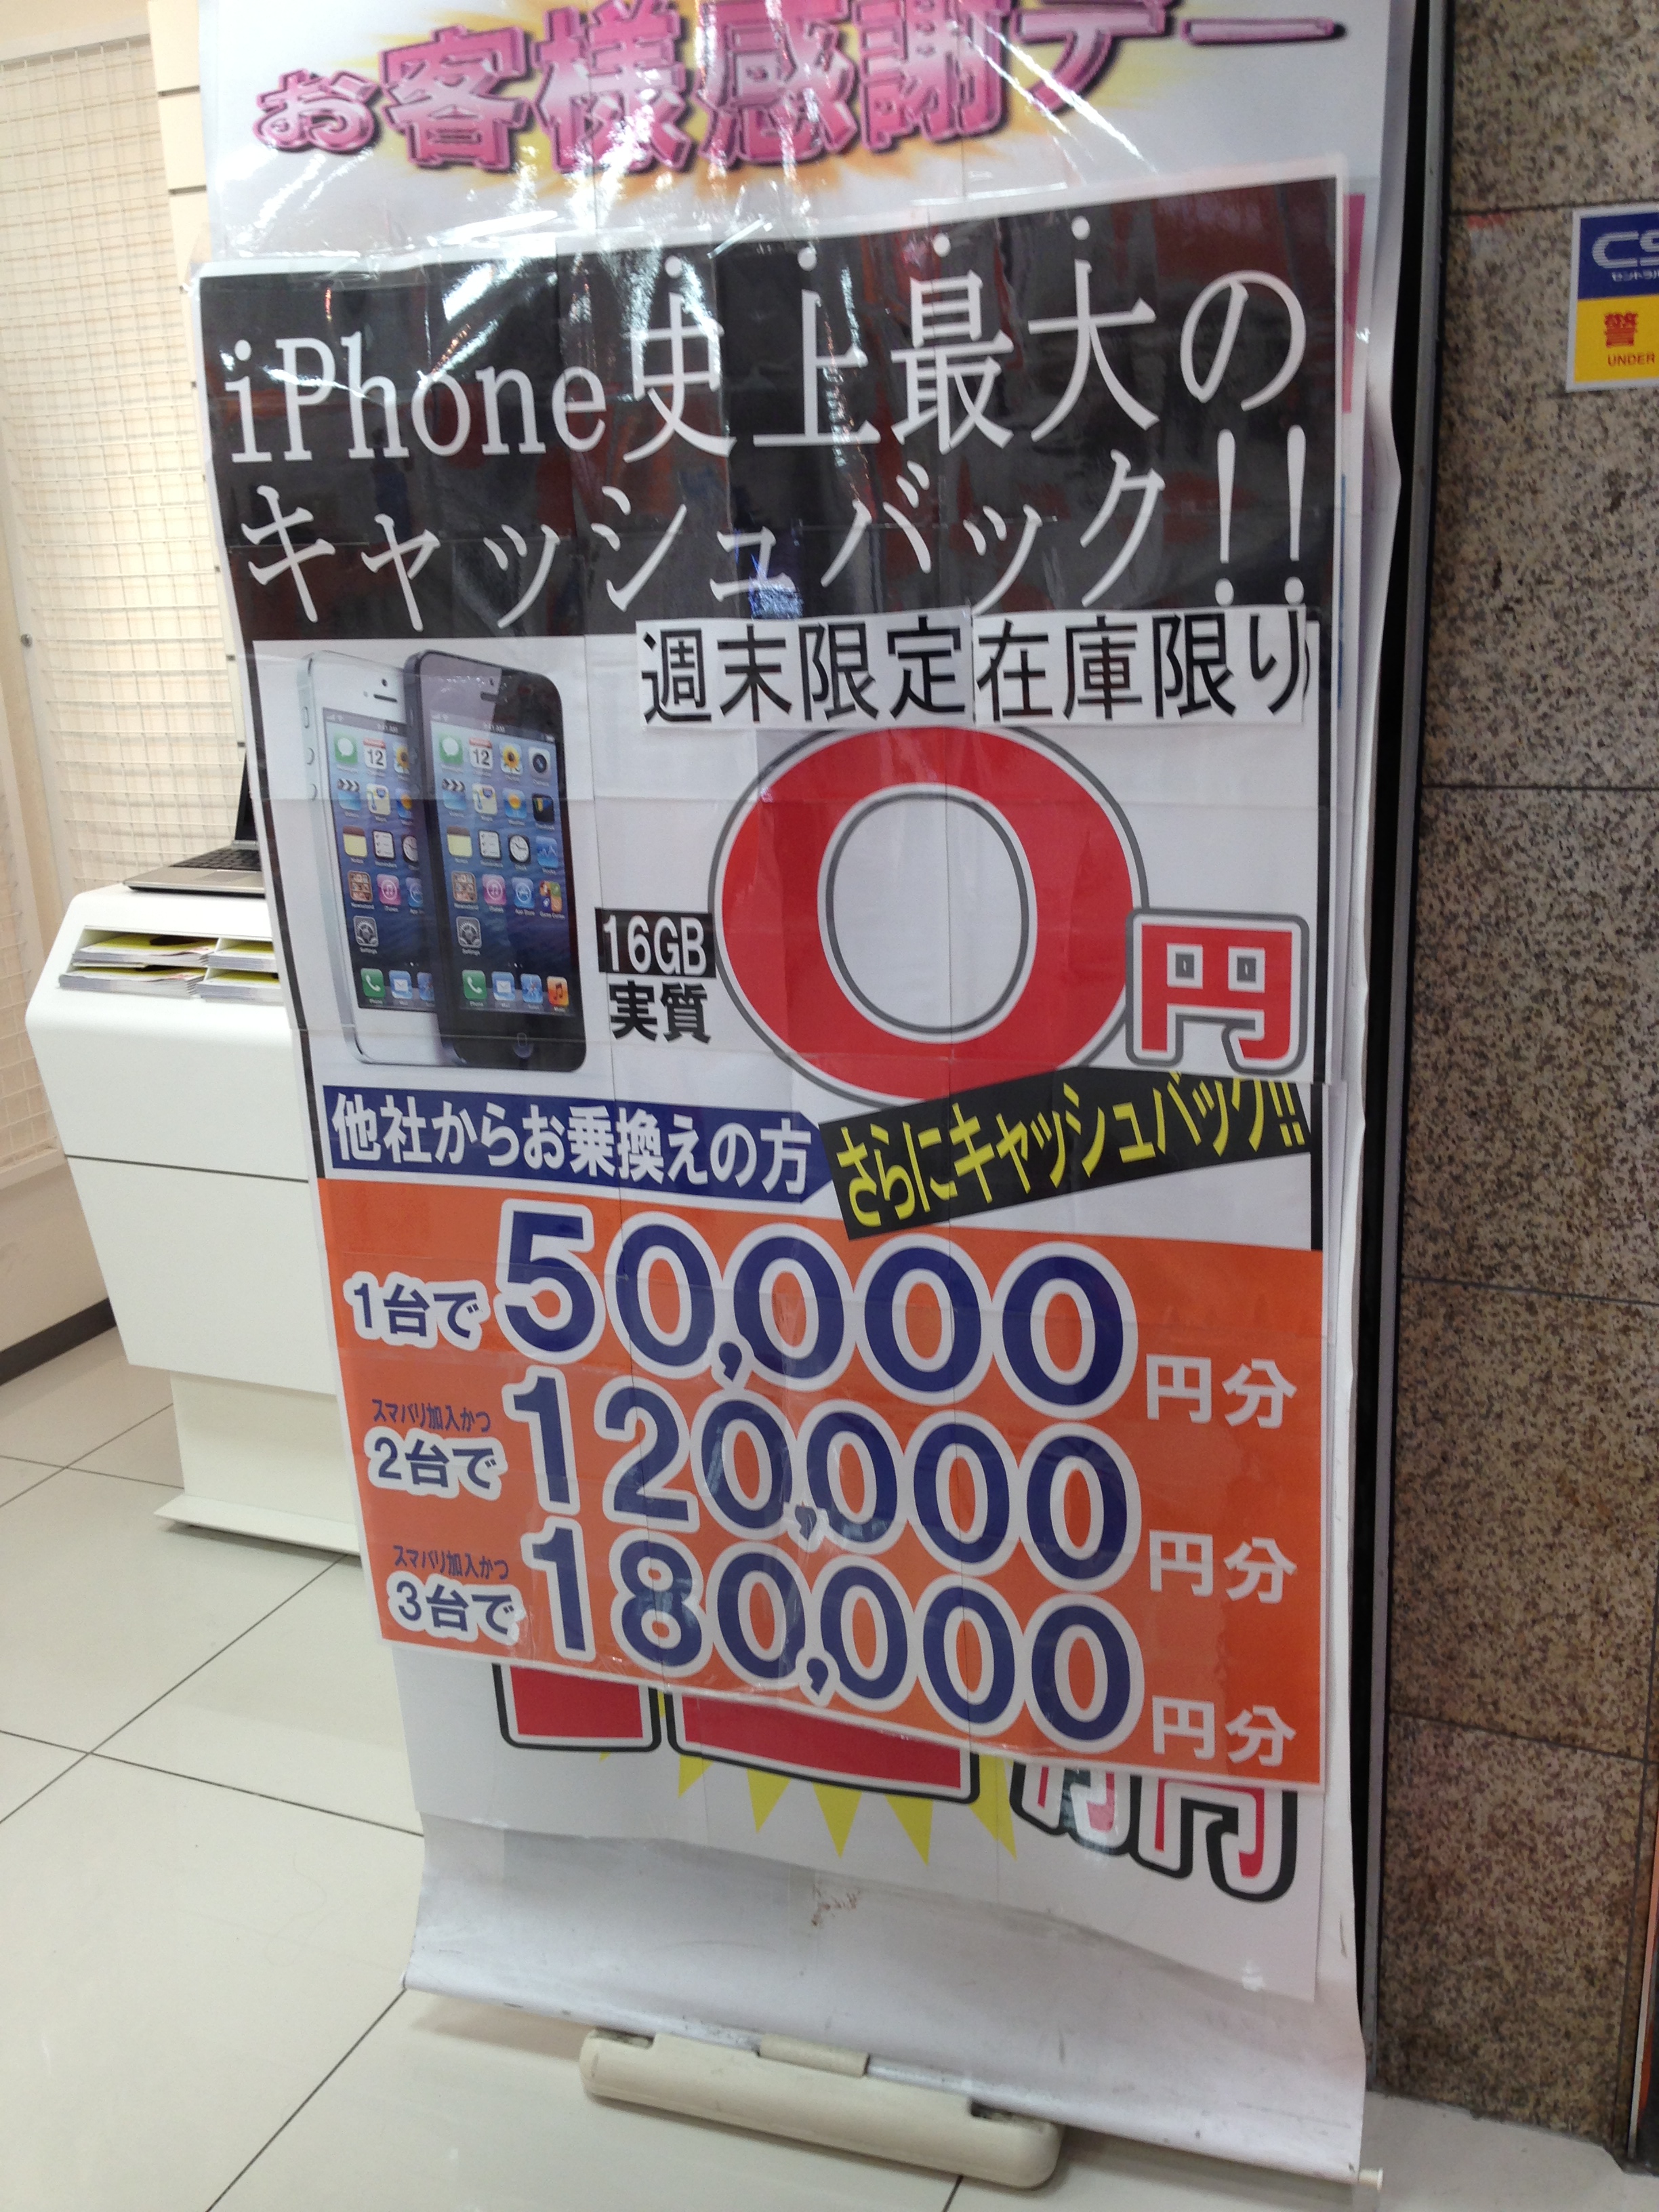 iphone5 0円